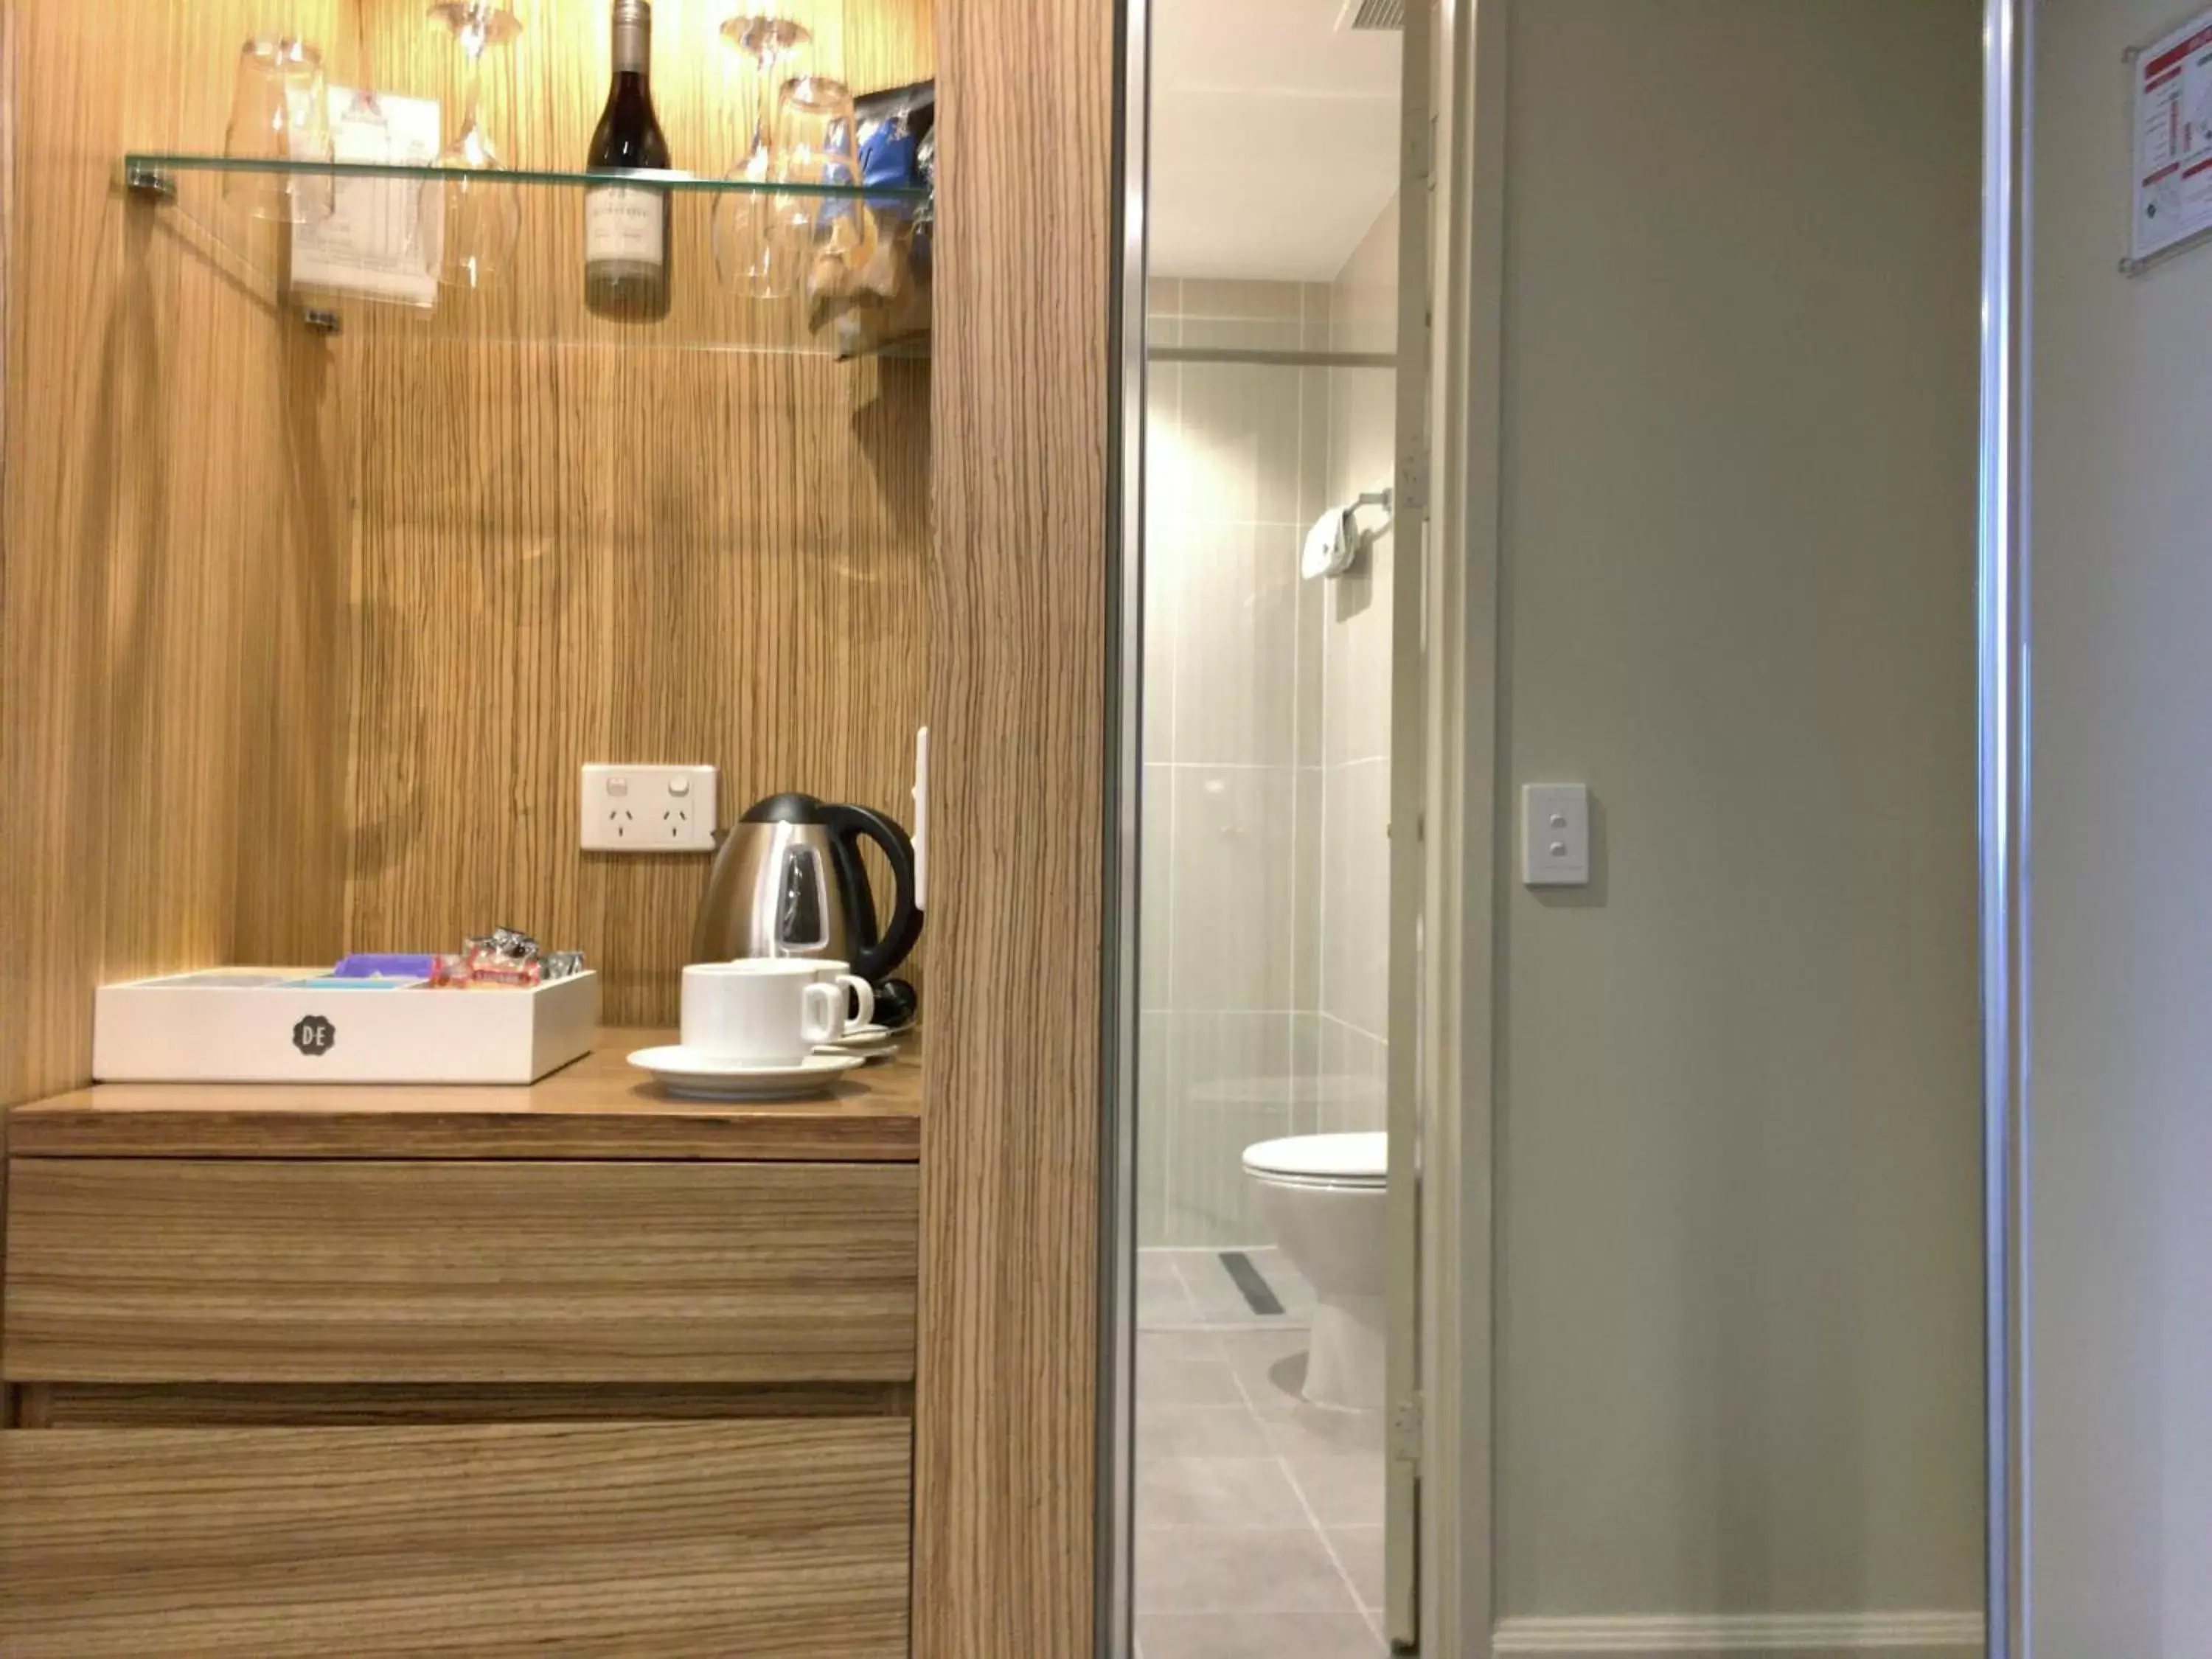 Coffee/tea facilities, Bathroom in Hotel Diana